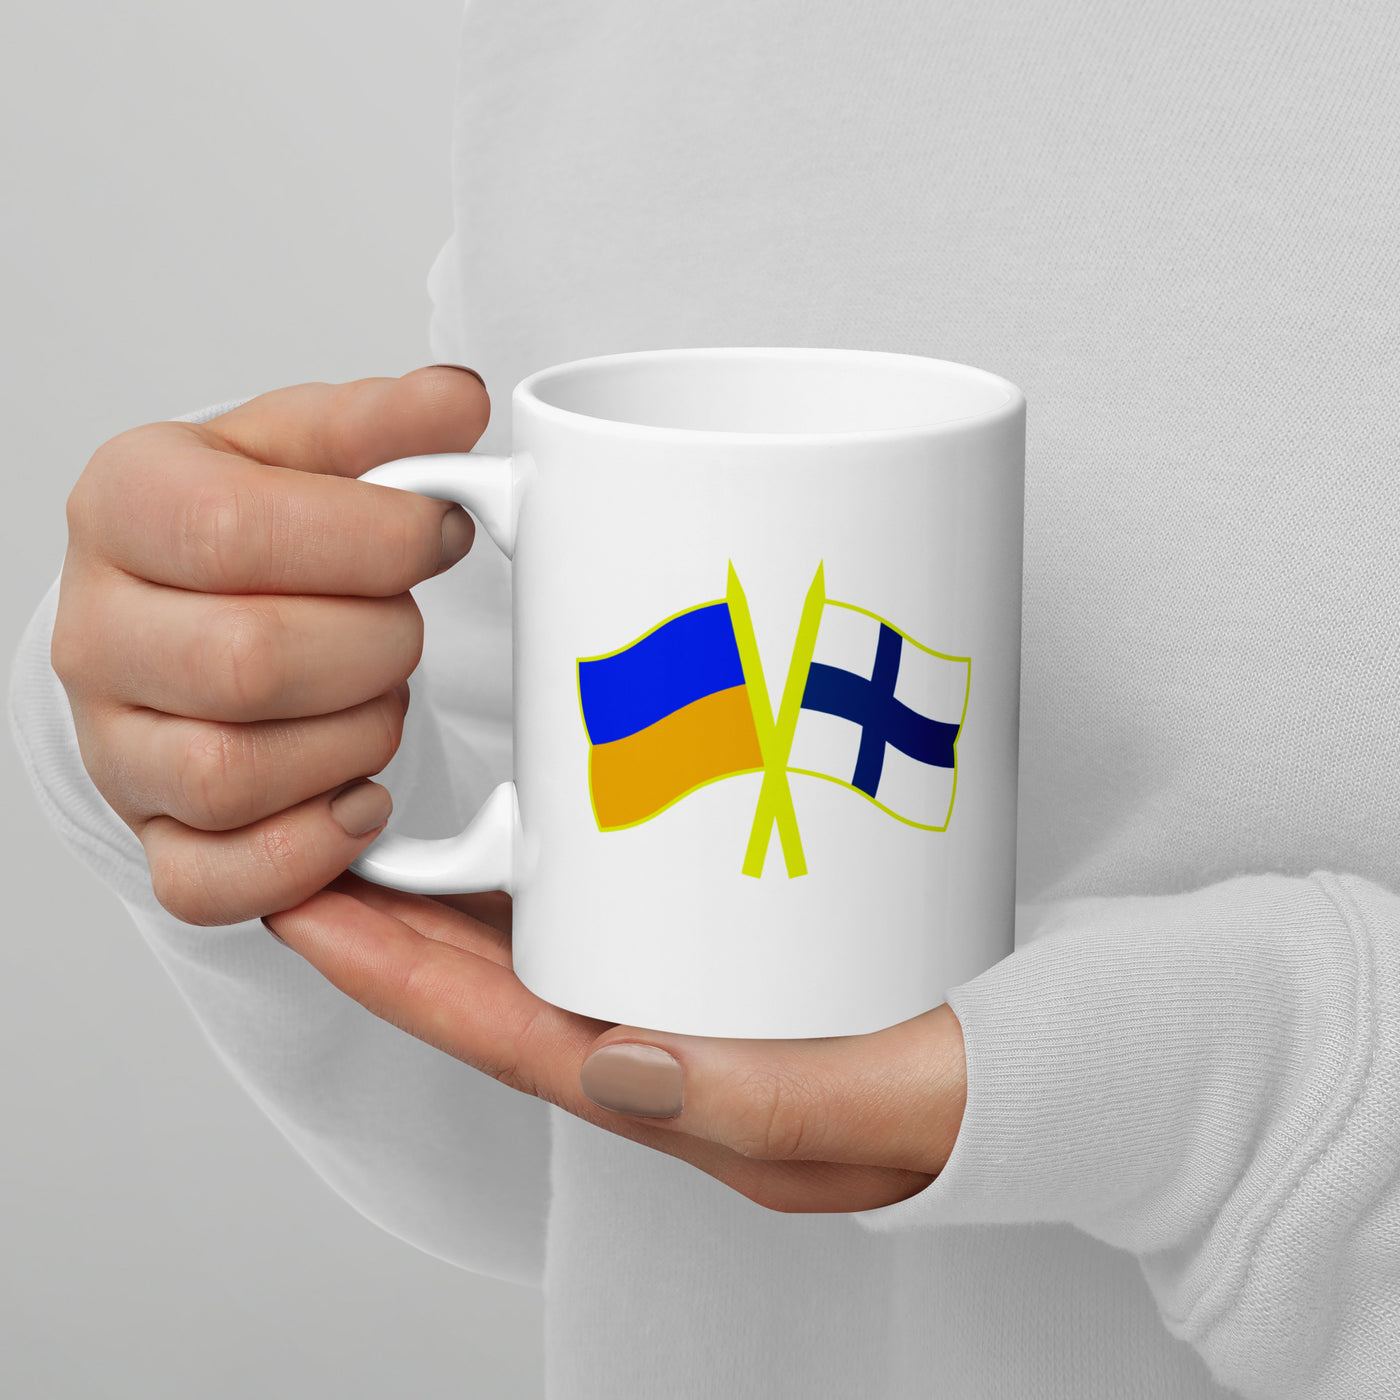 Finland-Ukraine Mug